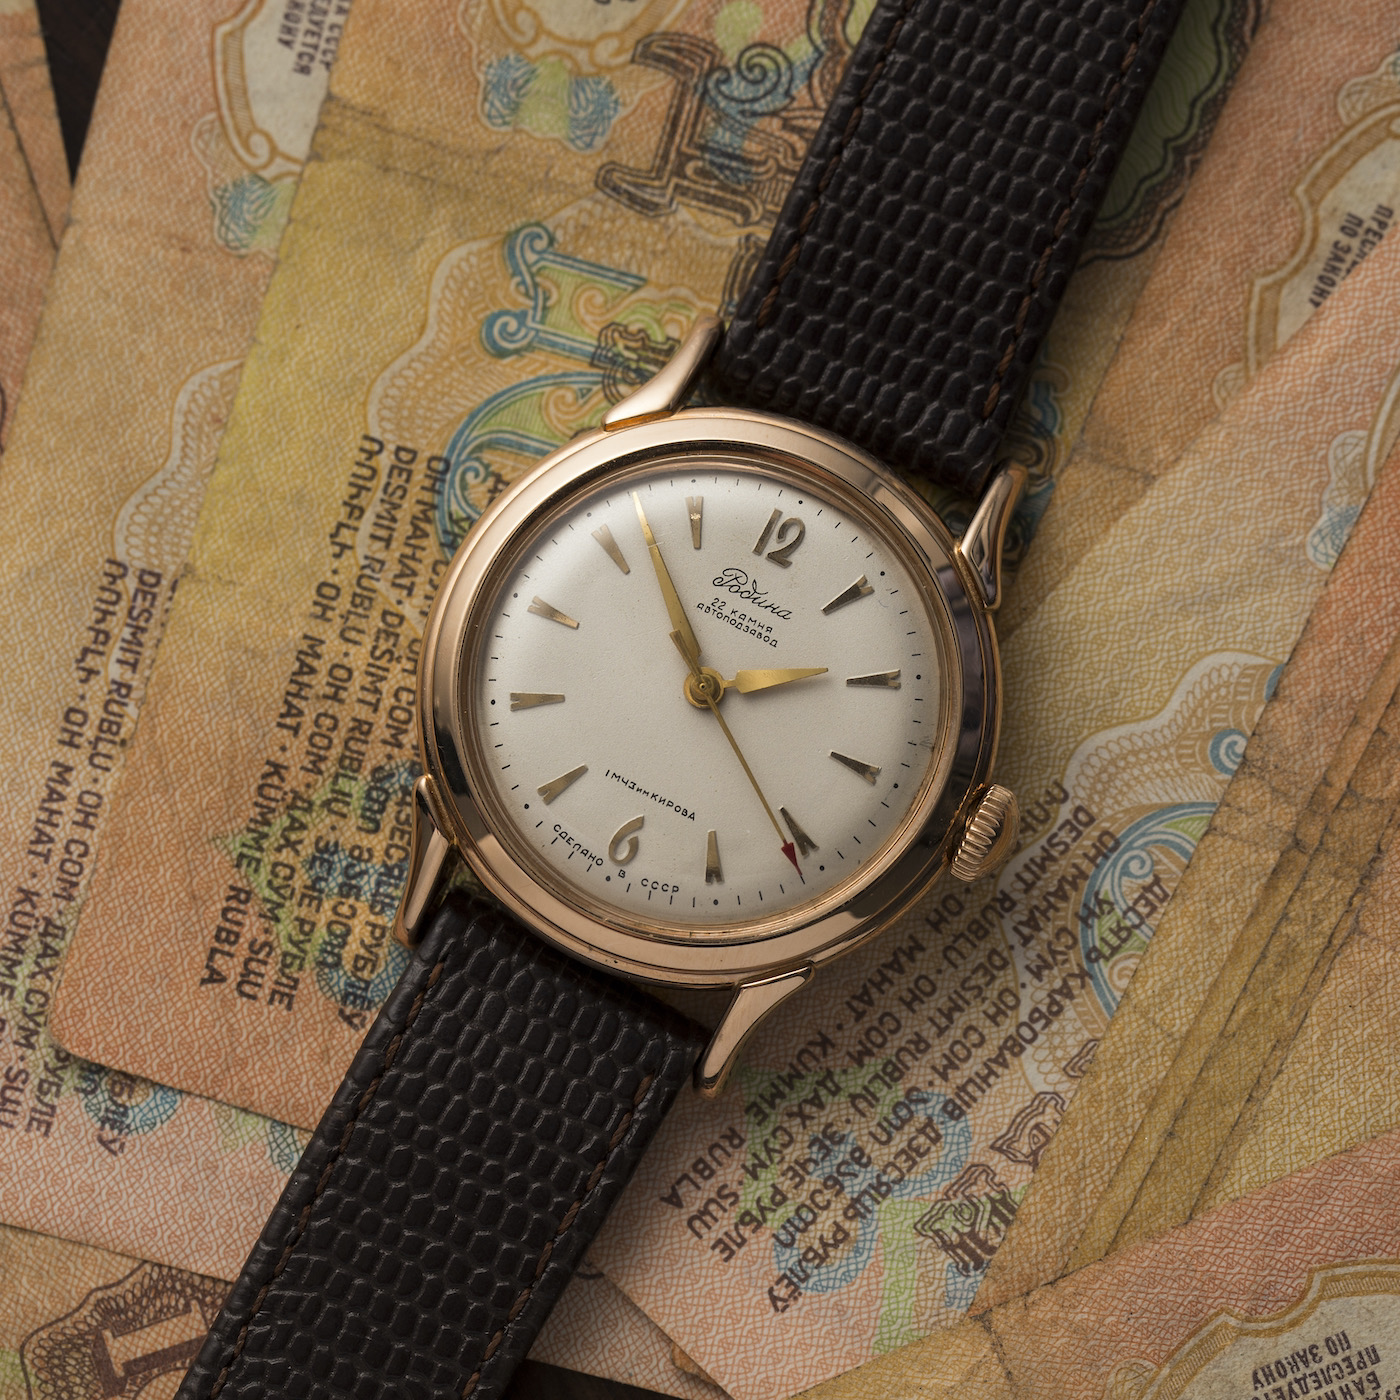 Russian Wrist Watches Sturmanskie ® - ONLINE CATALOG